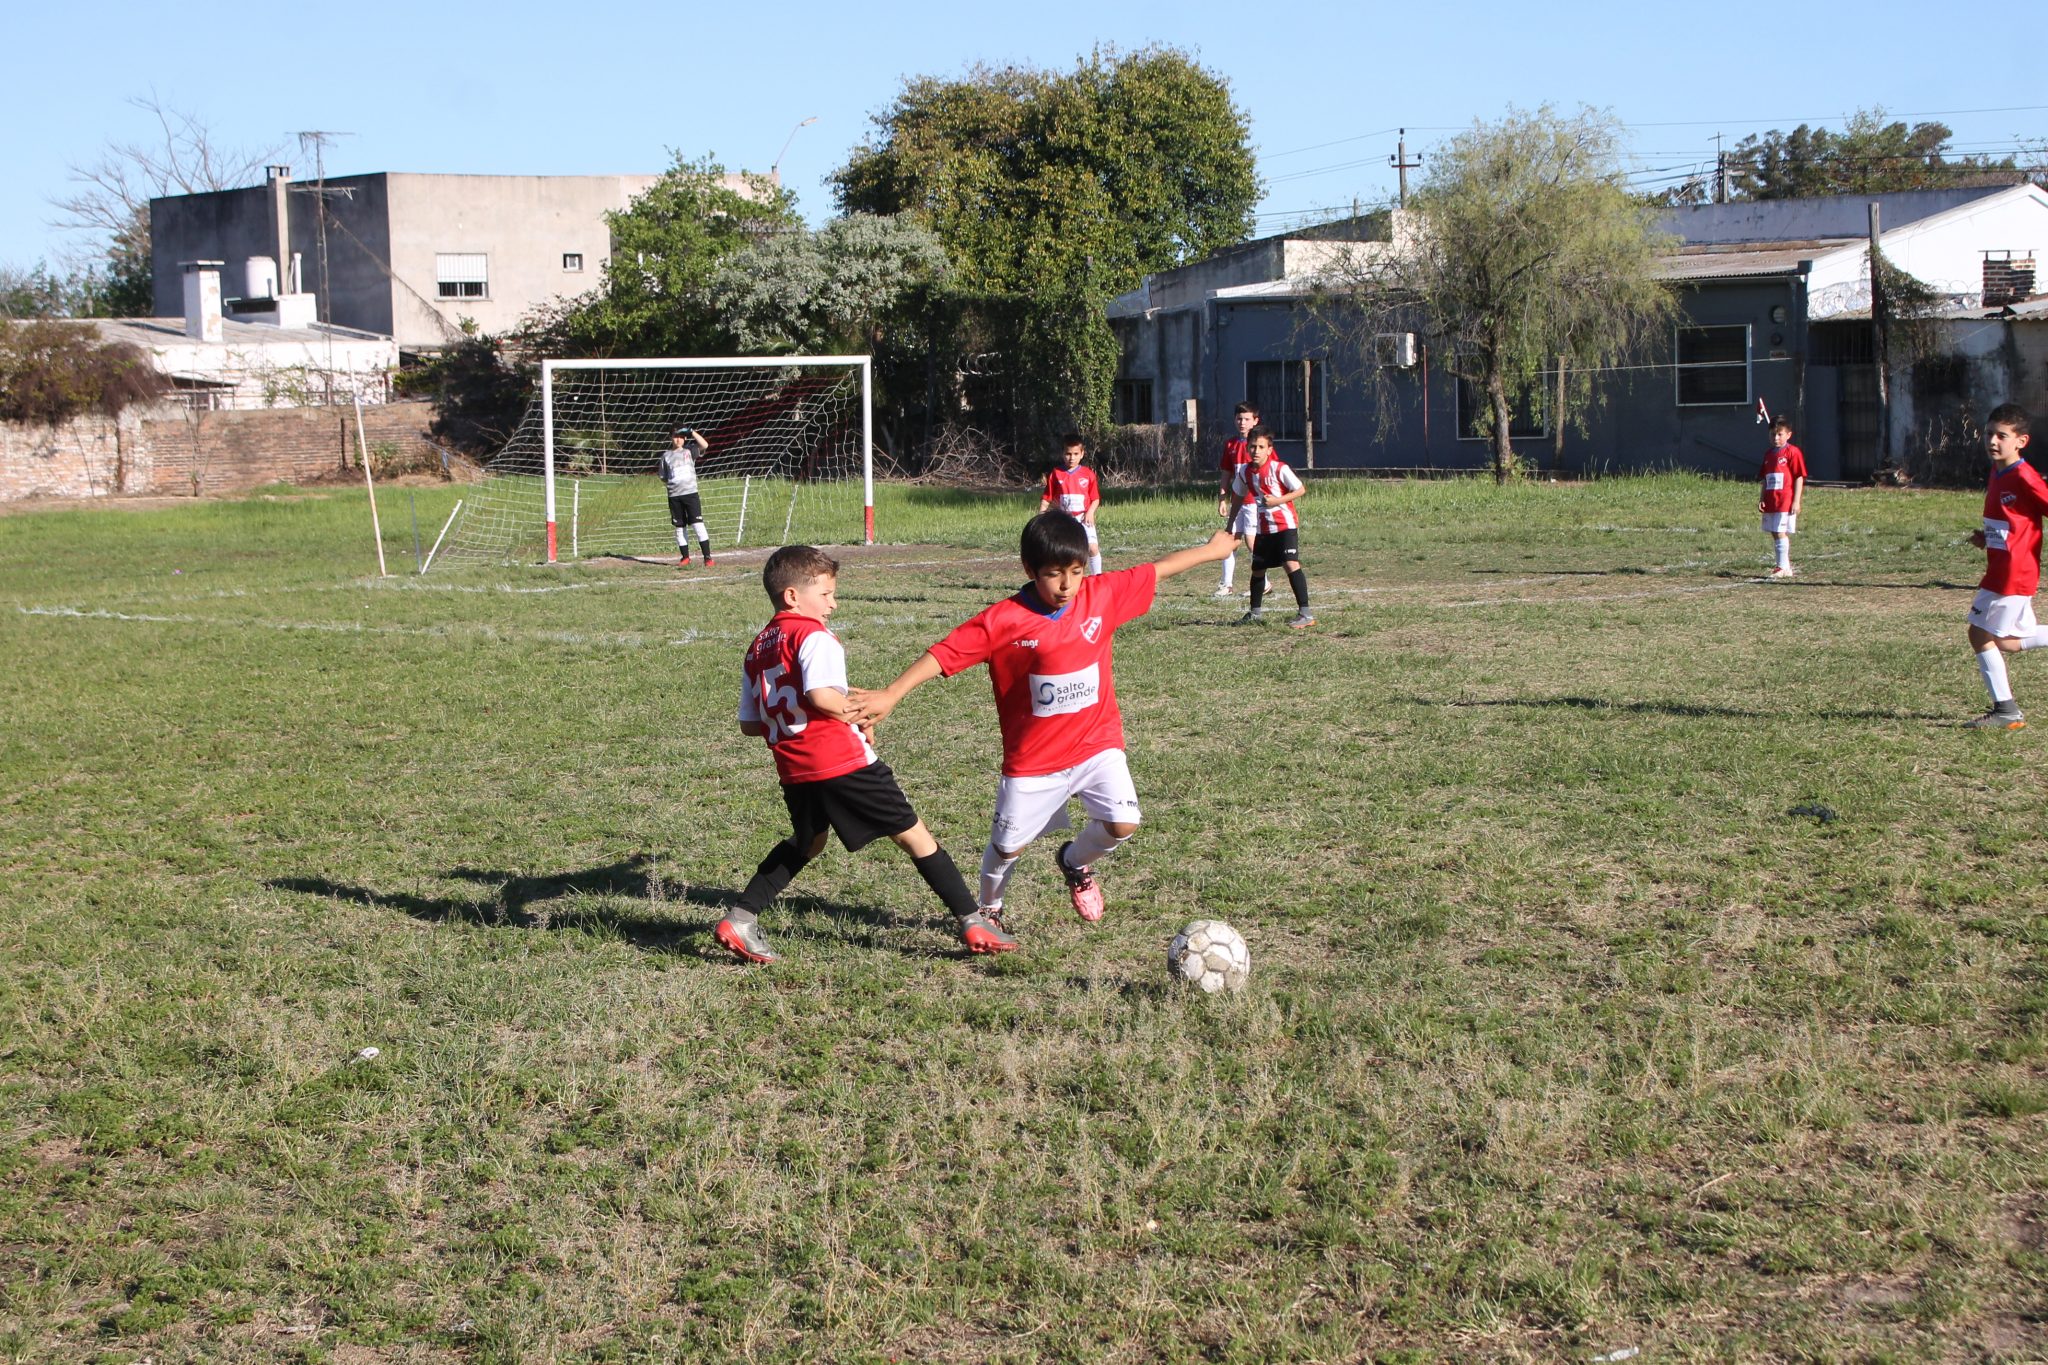 Baby fútbol, un fenómeno social con plataforma deportiva - Diario El Pueblo  - Salto Uruguay